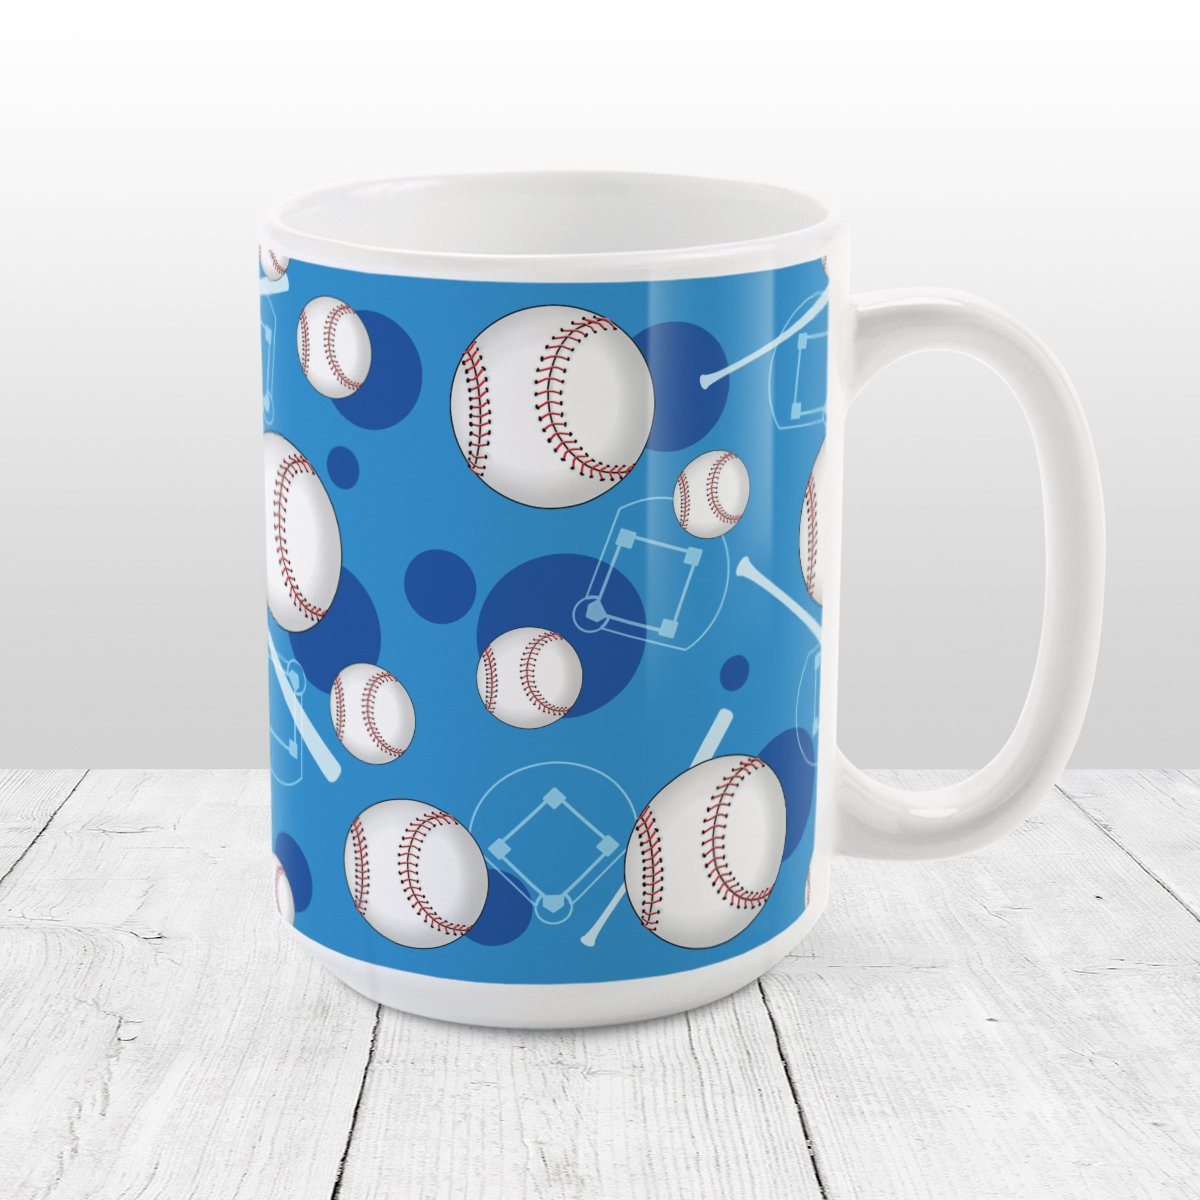 Baseball Themed Pattern - Blue Baseball Mug at Amy's Coffee Mugs